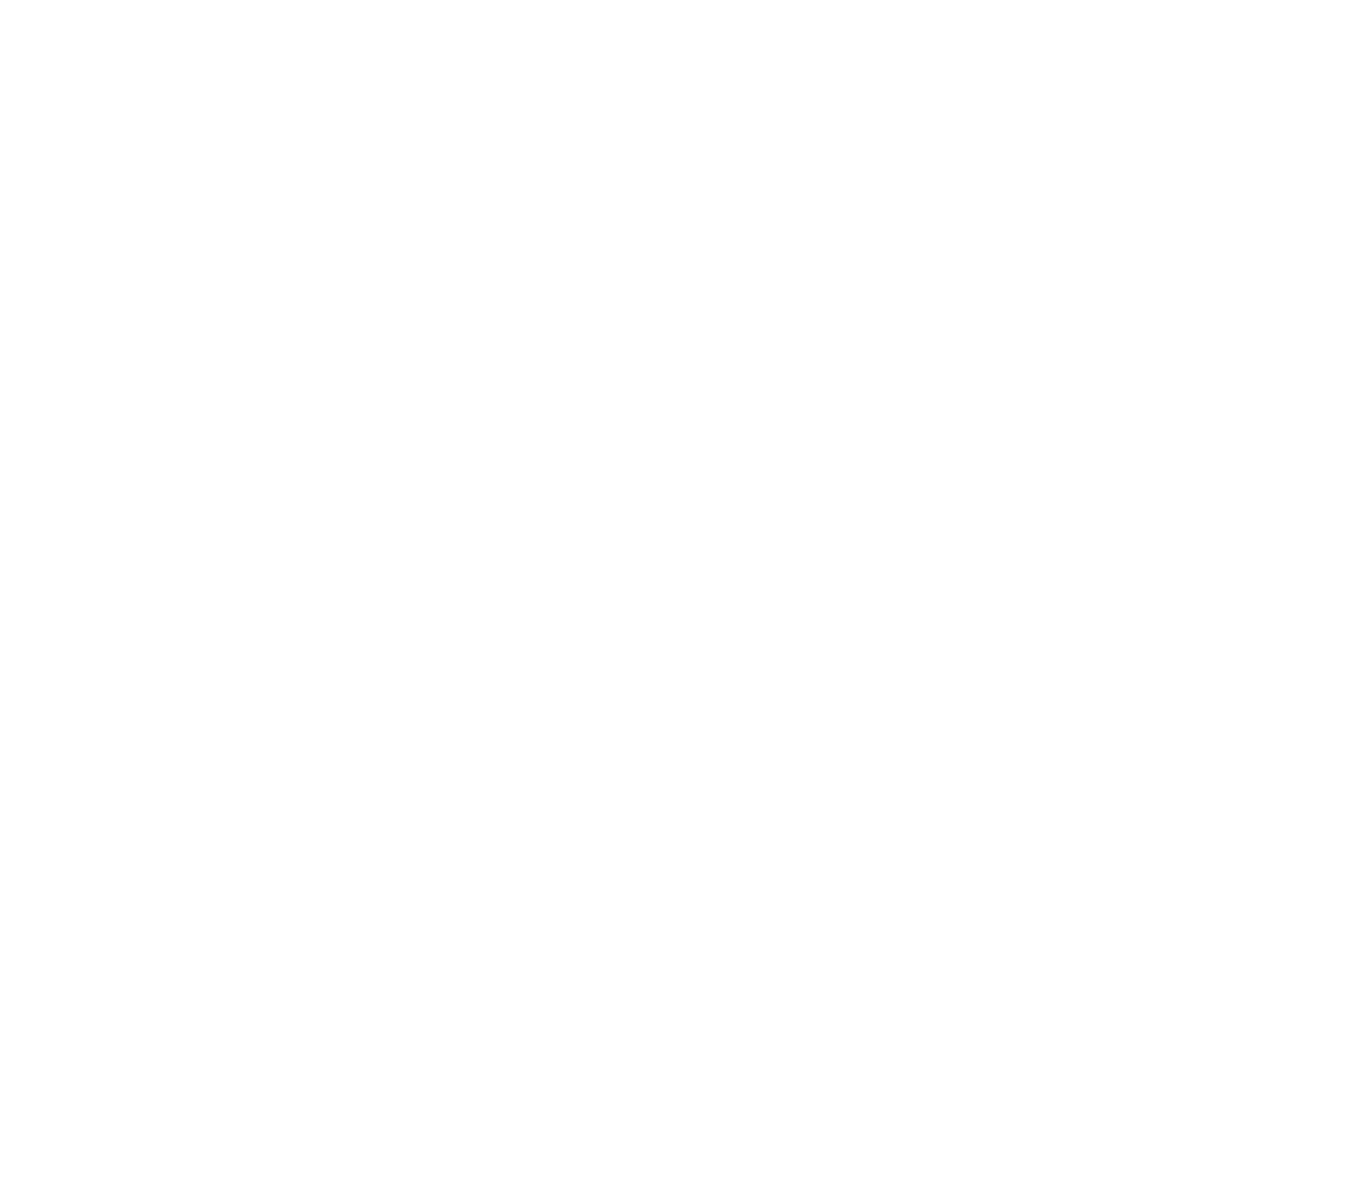 Imagery International Movement